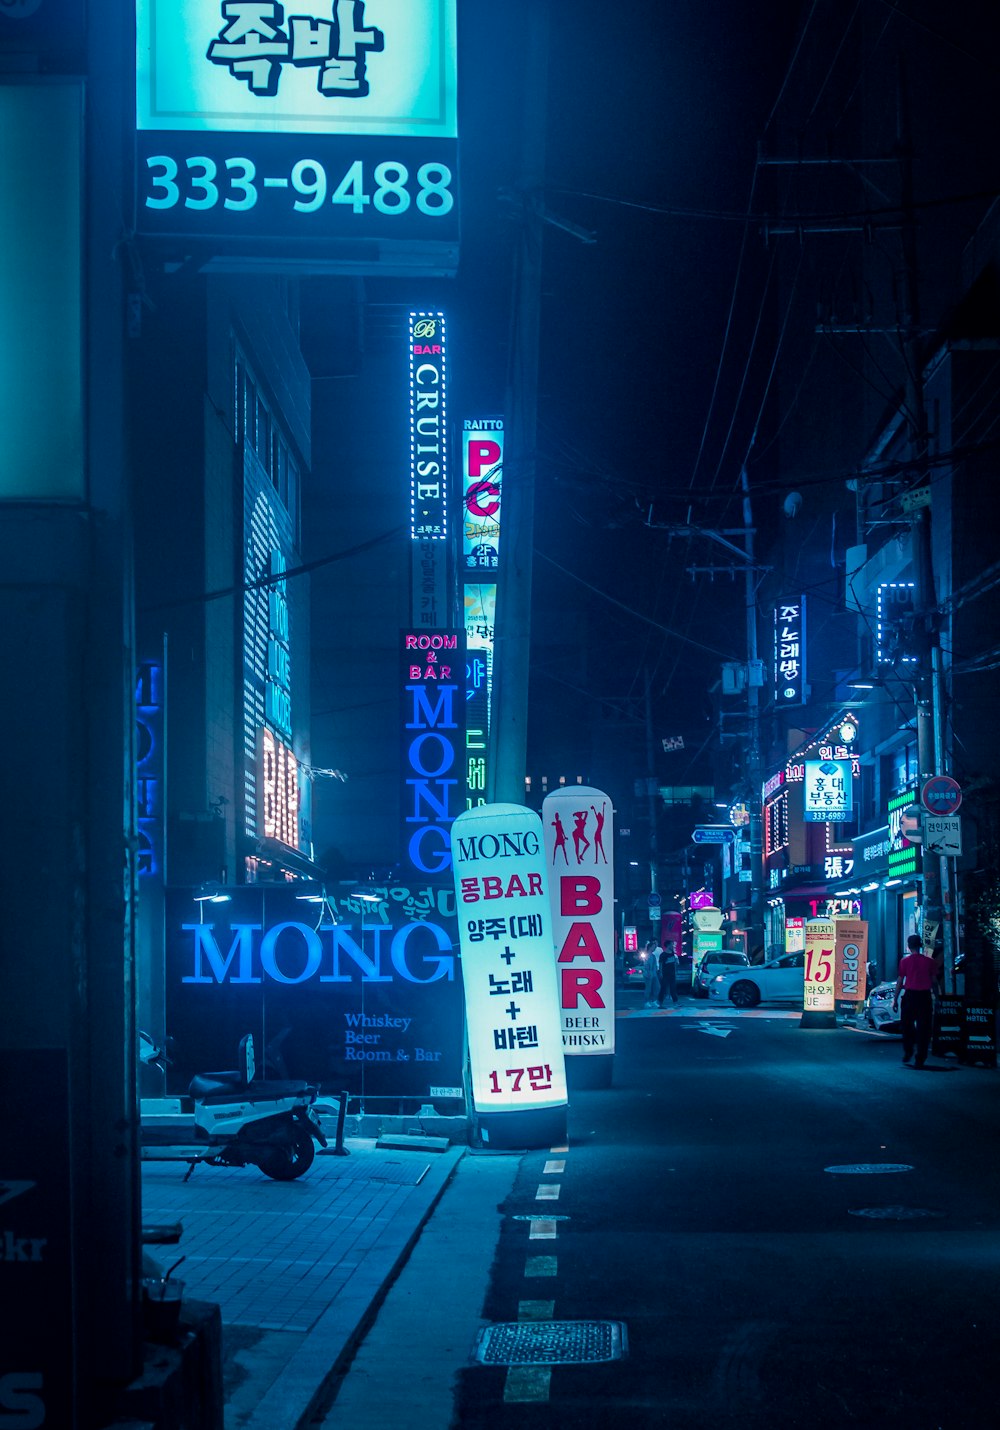 Mong Bar signage near road